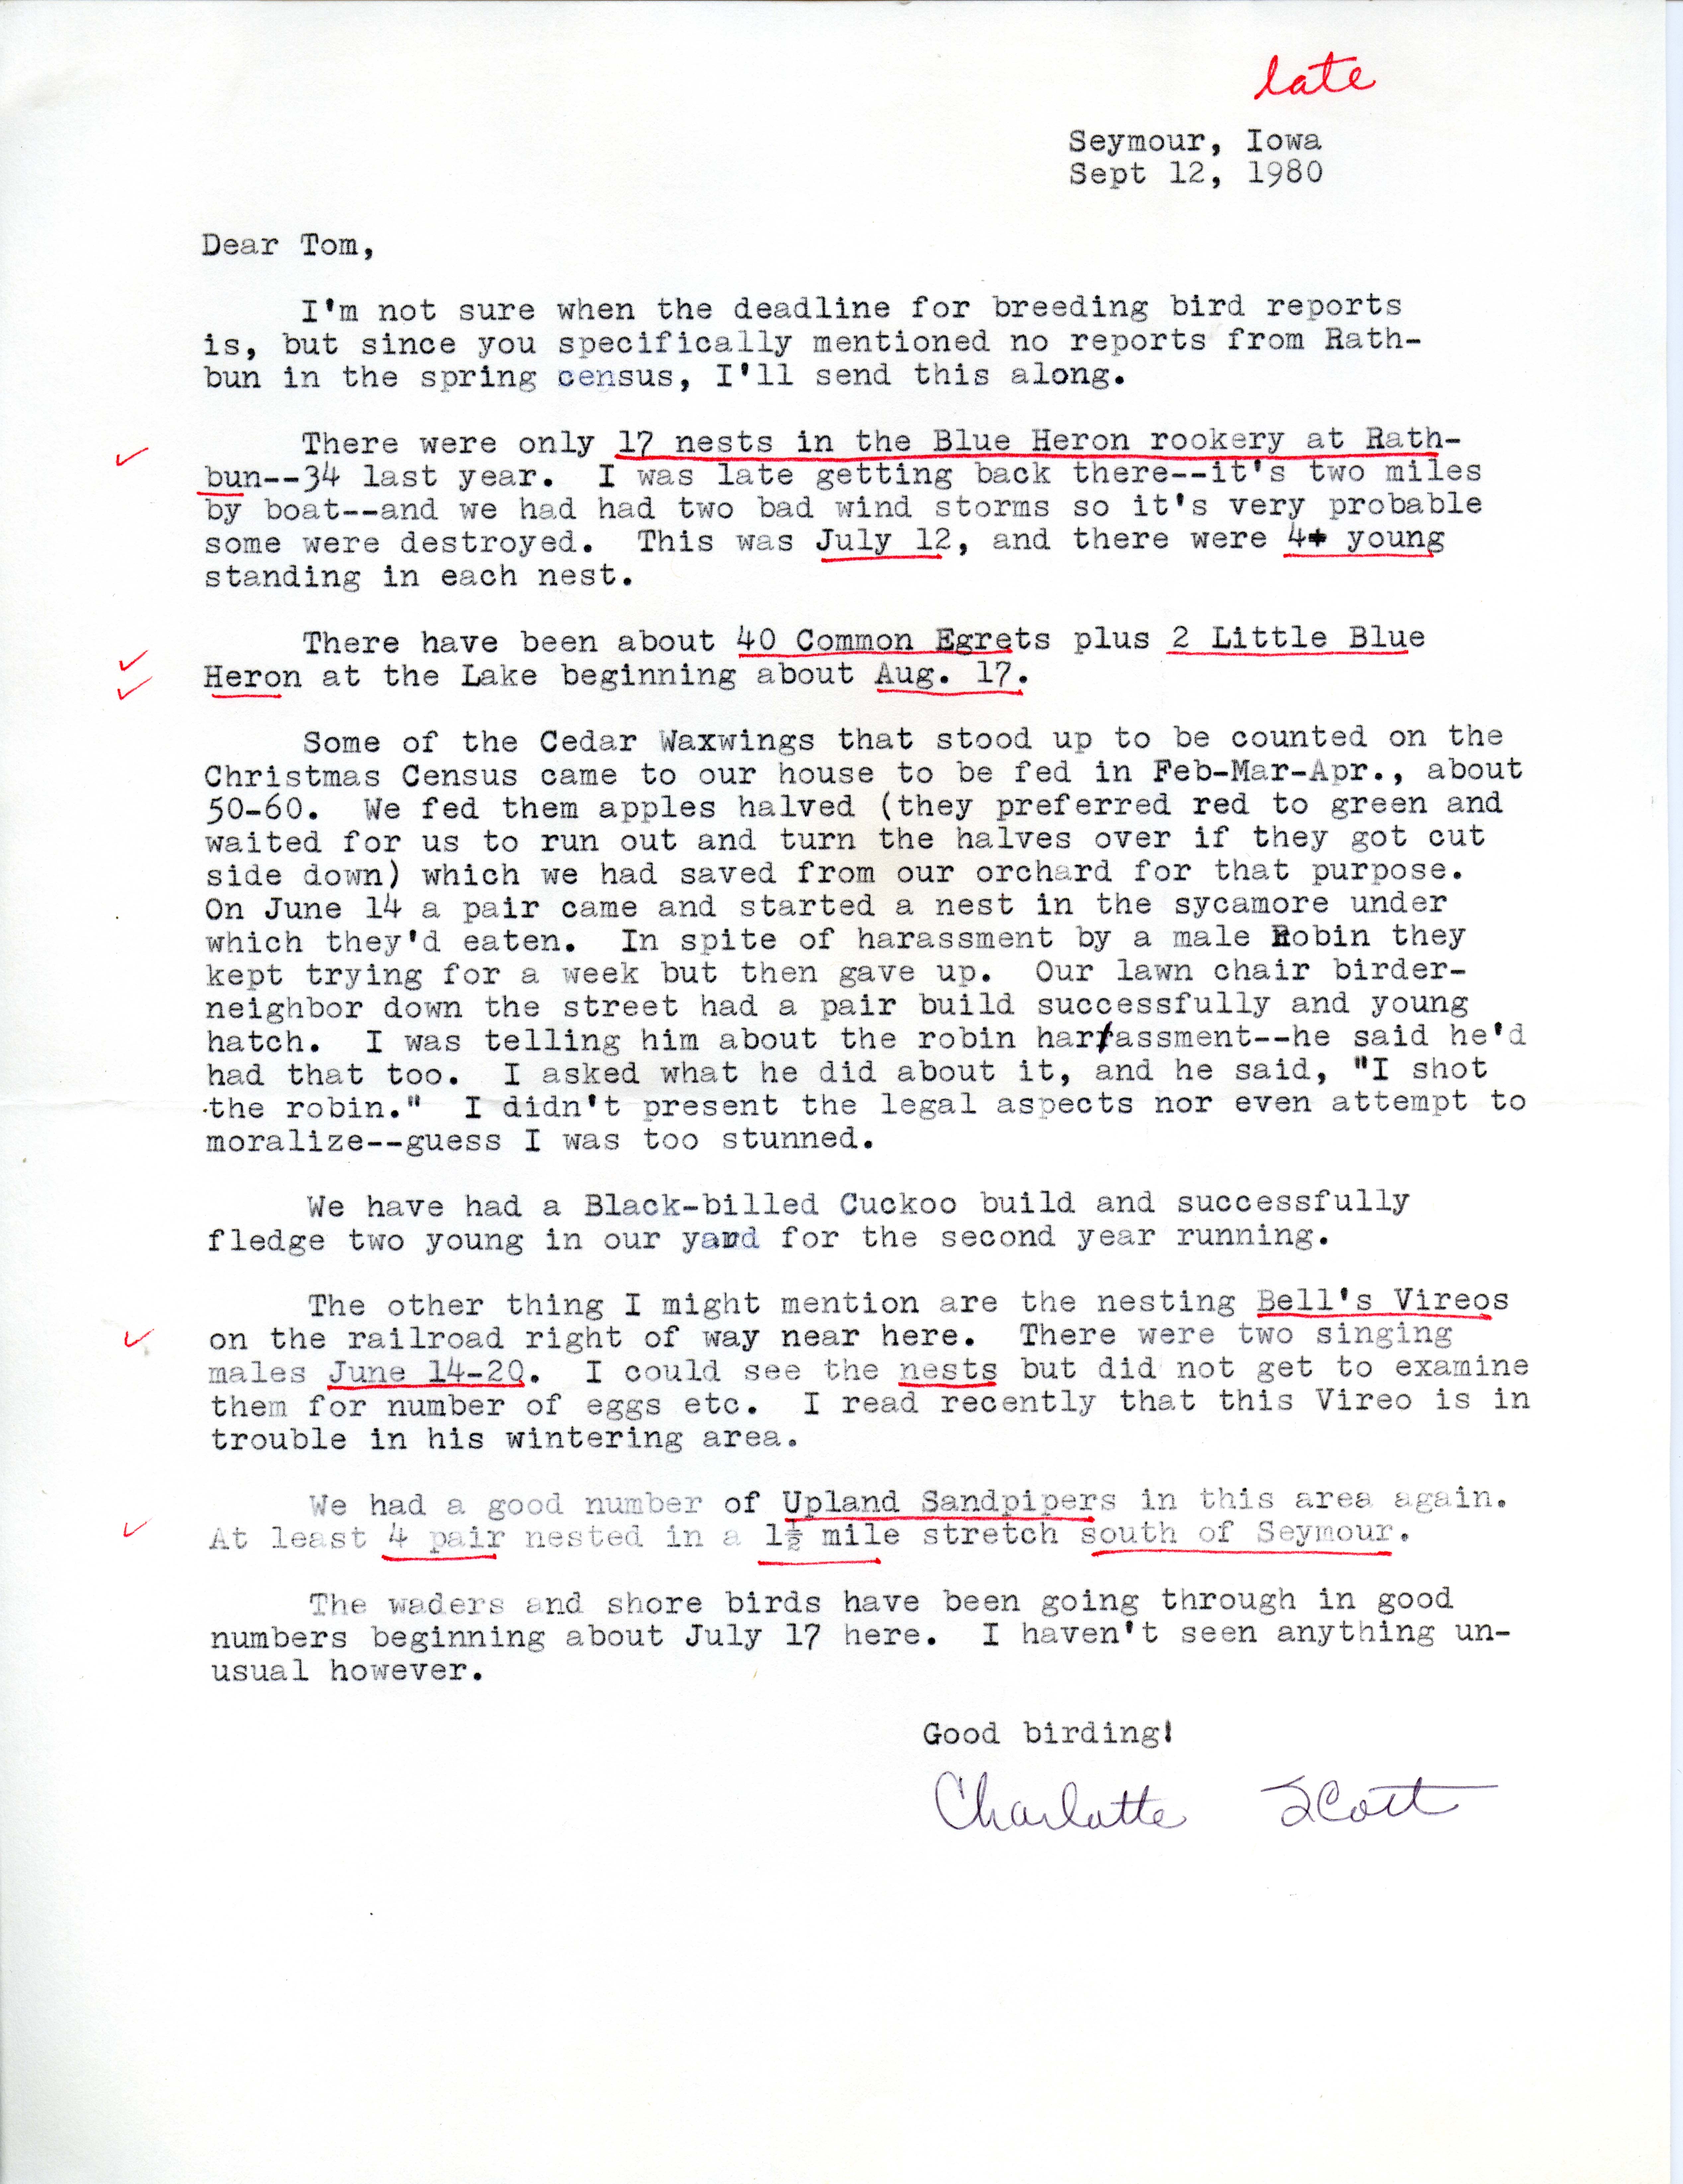 Charlotte Scott letter to Thomas H. Kent regarding bird sightings, September 12, 1980